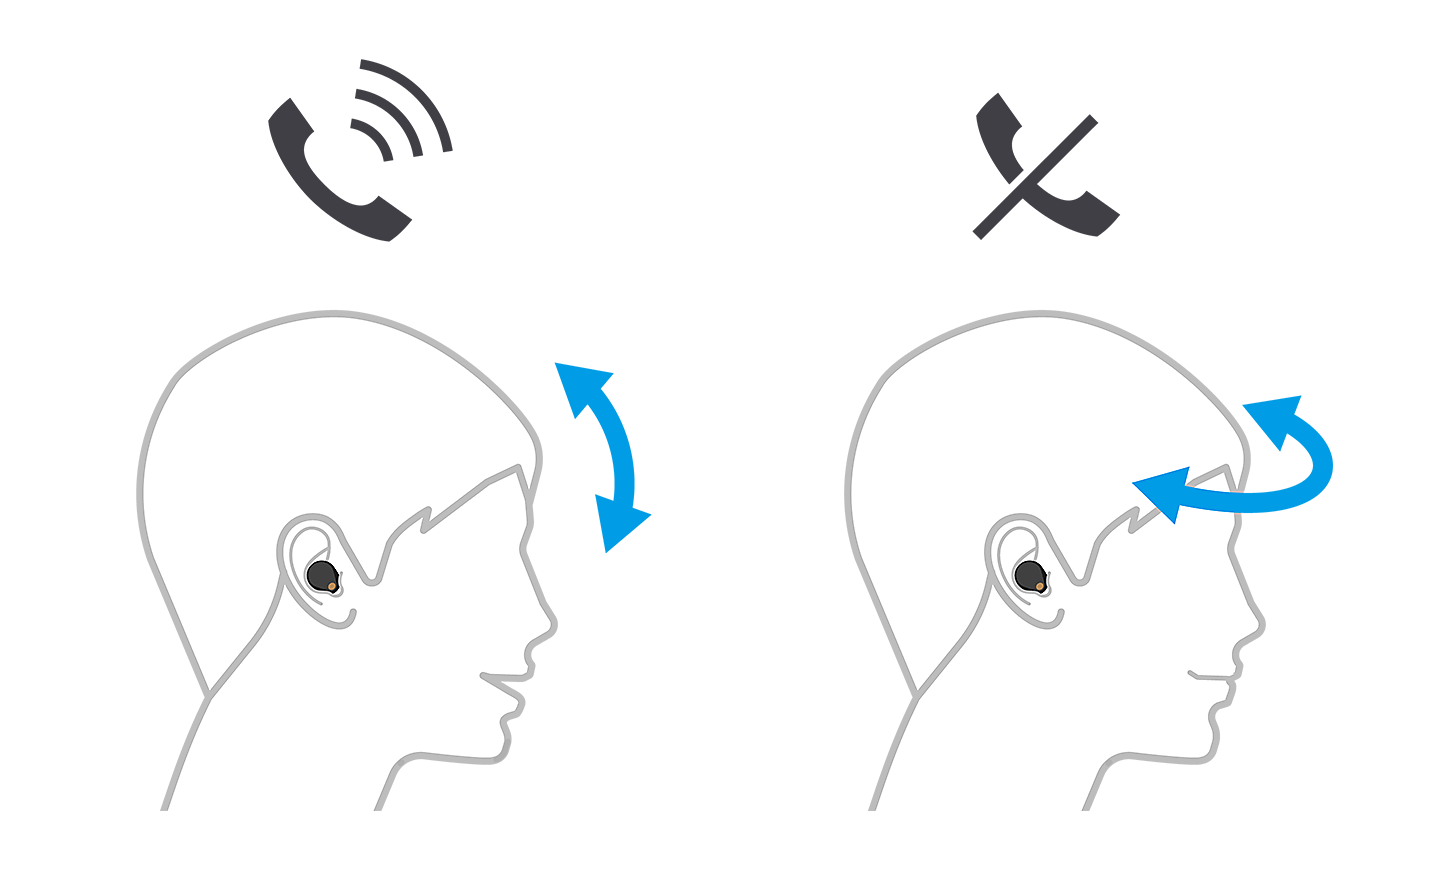 Imagen de dos cabezas; la de la izquierda acepta una llamada con flechas hacia arriba y abajo, mientras que la de la derecha la rechaza con flechas hacia la izquierda y derecha